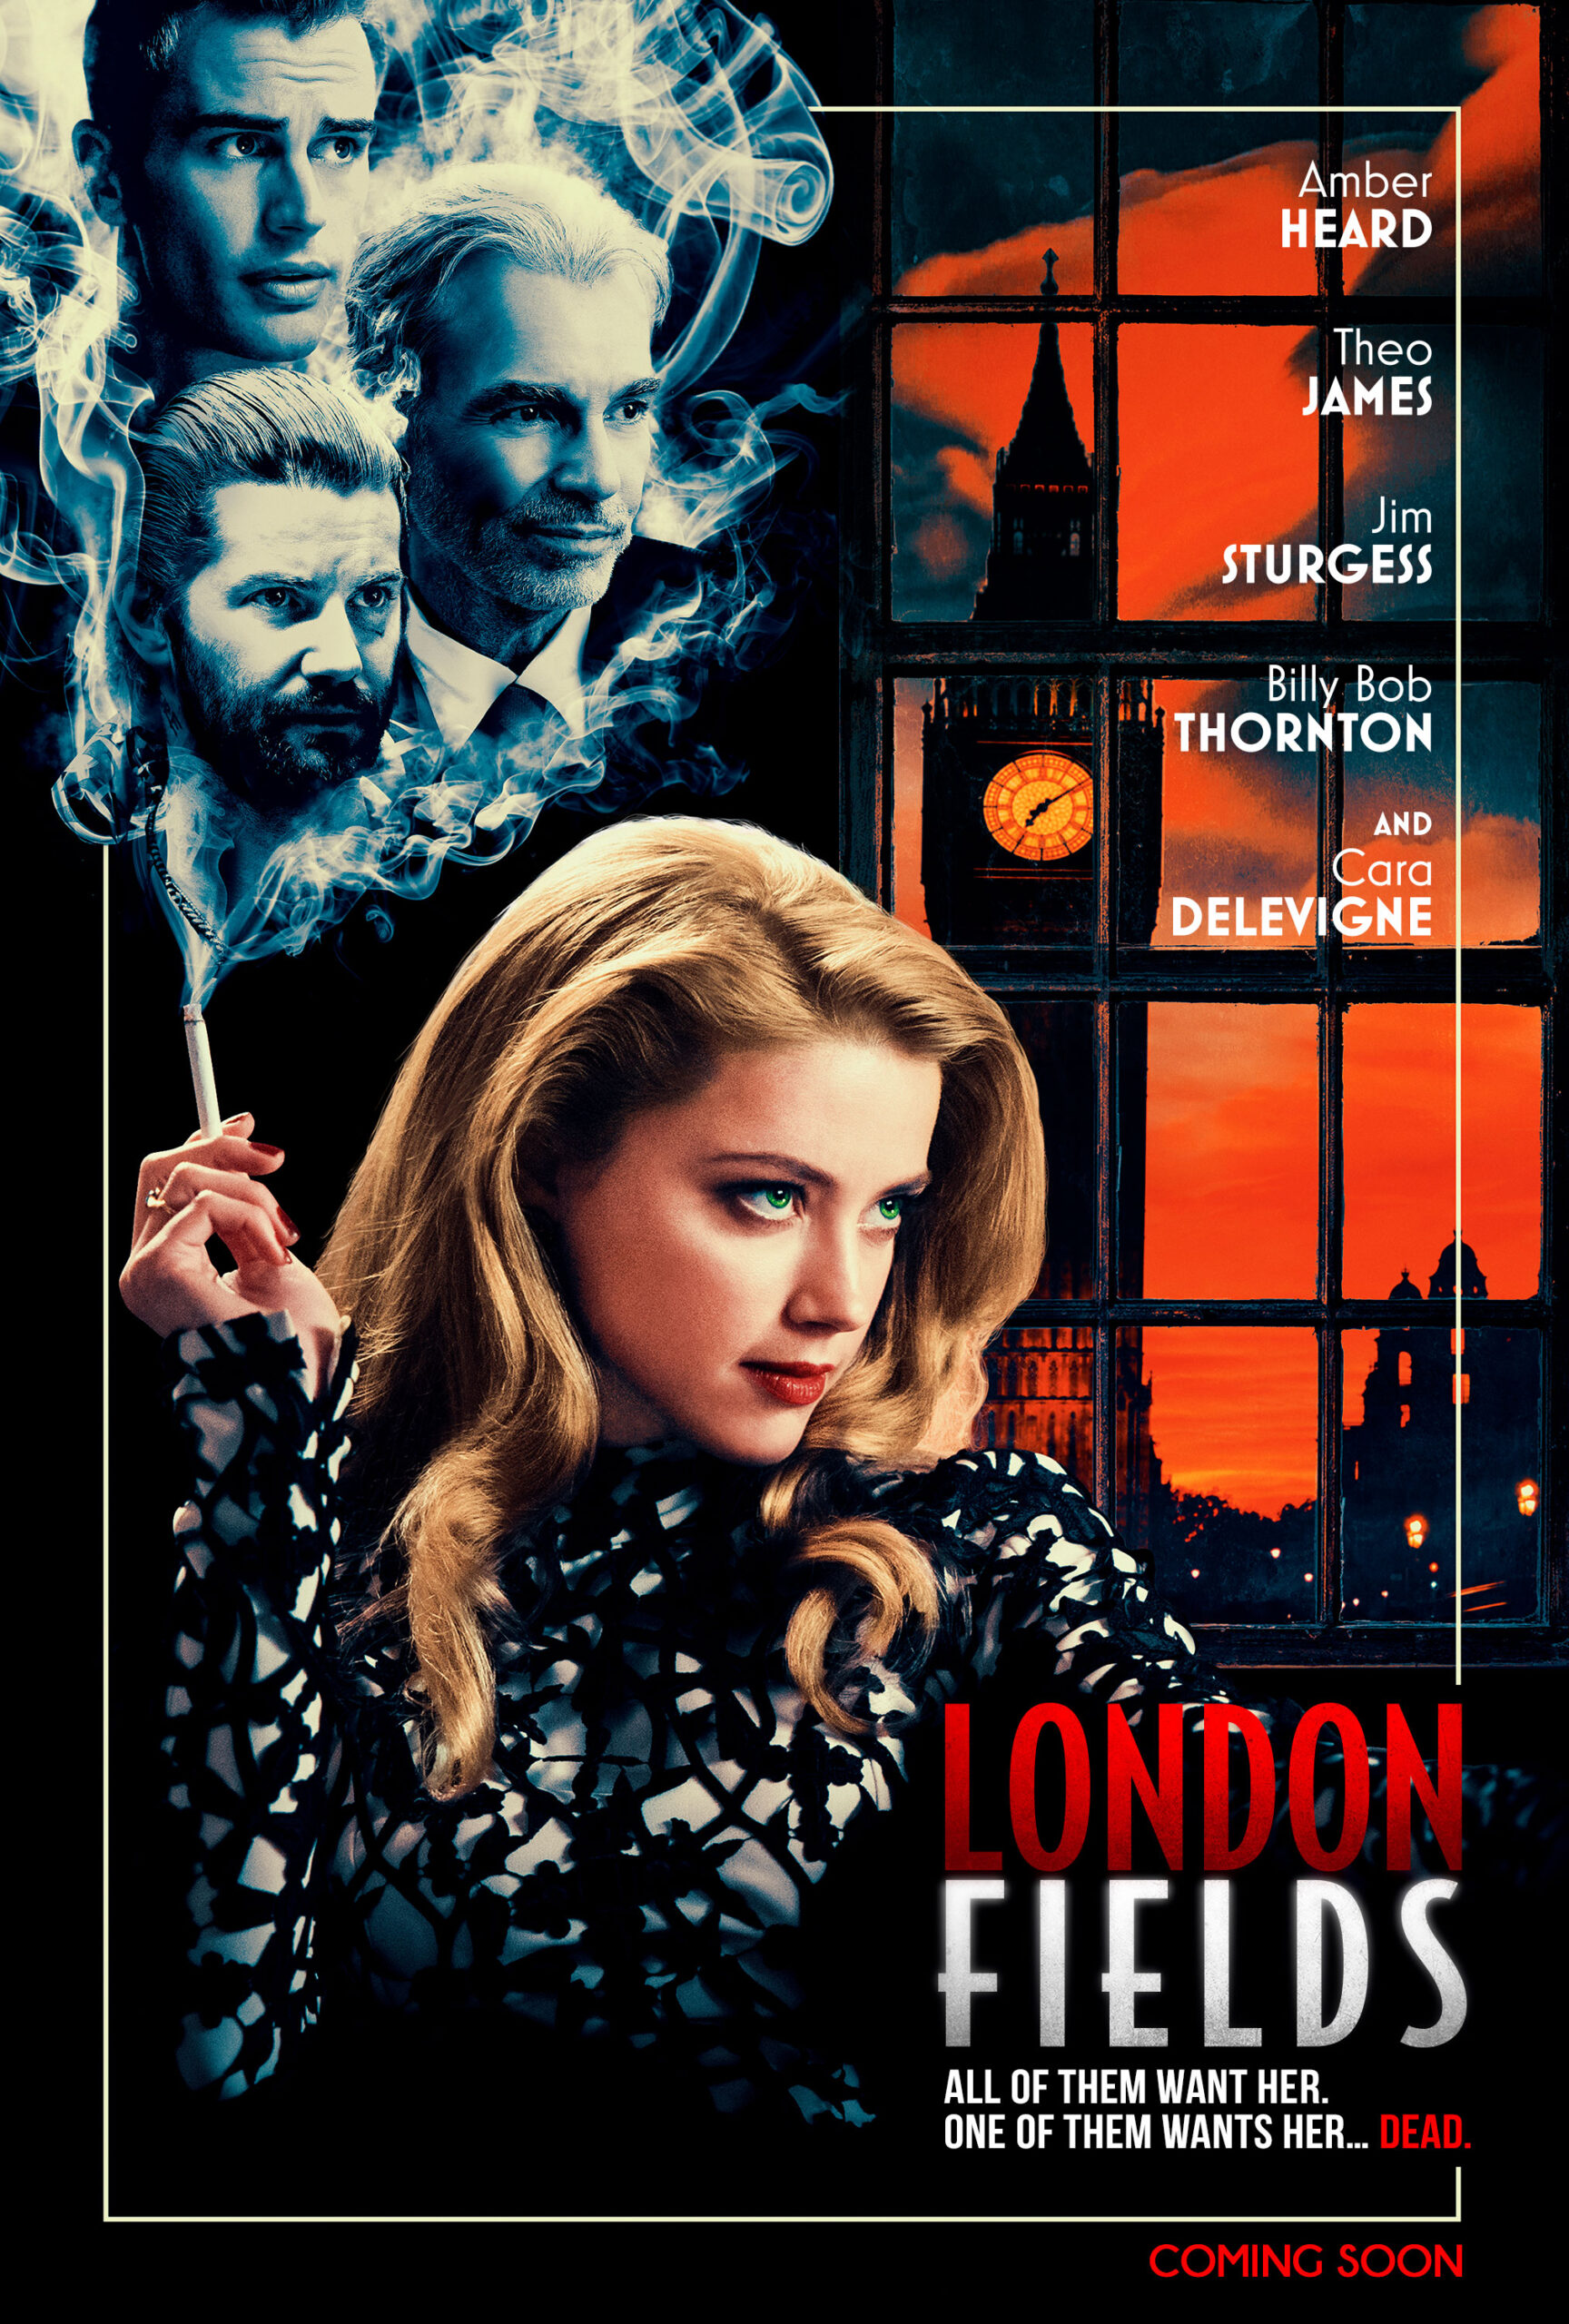 London Fields starring Amber Heard